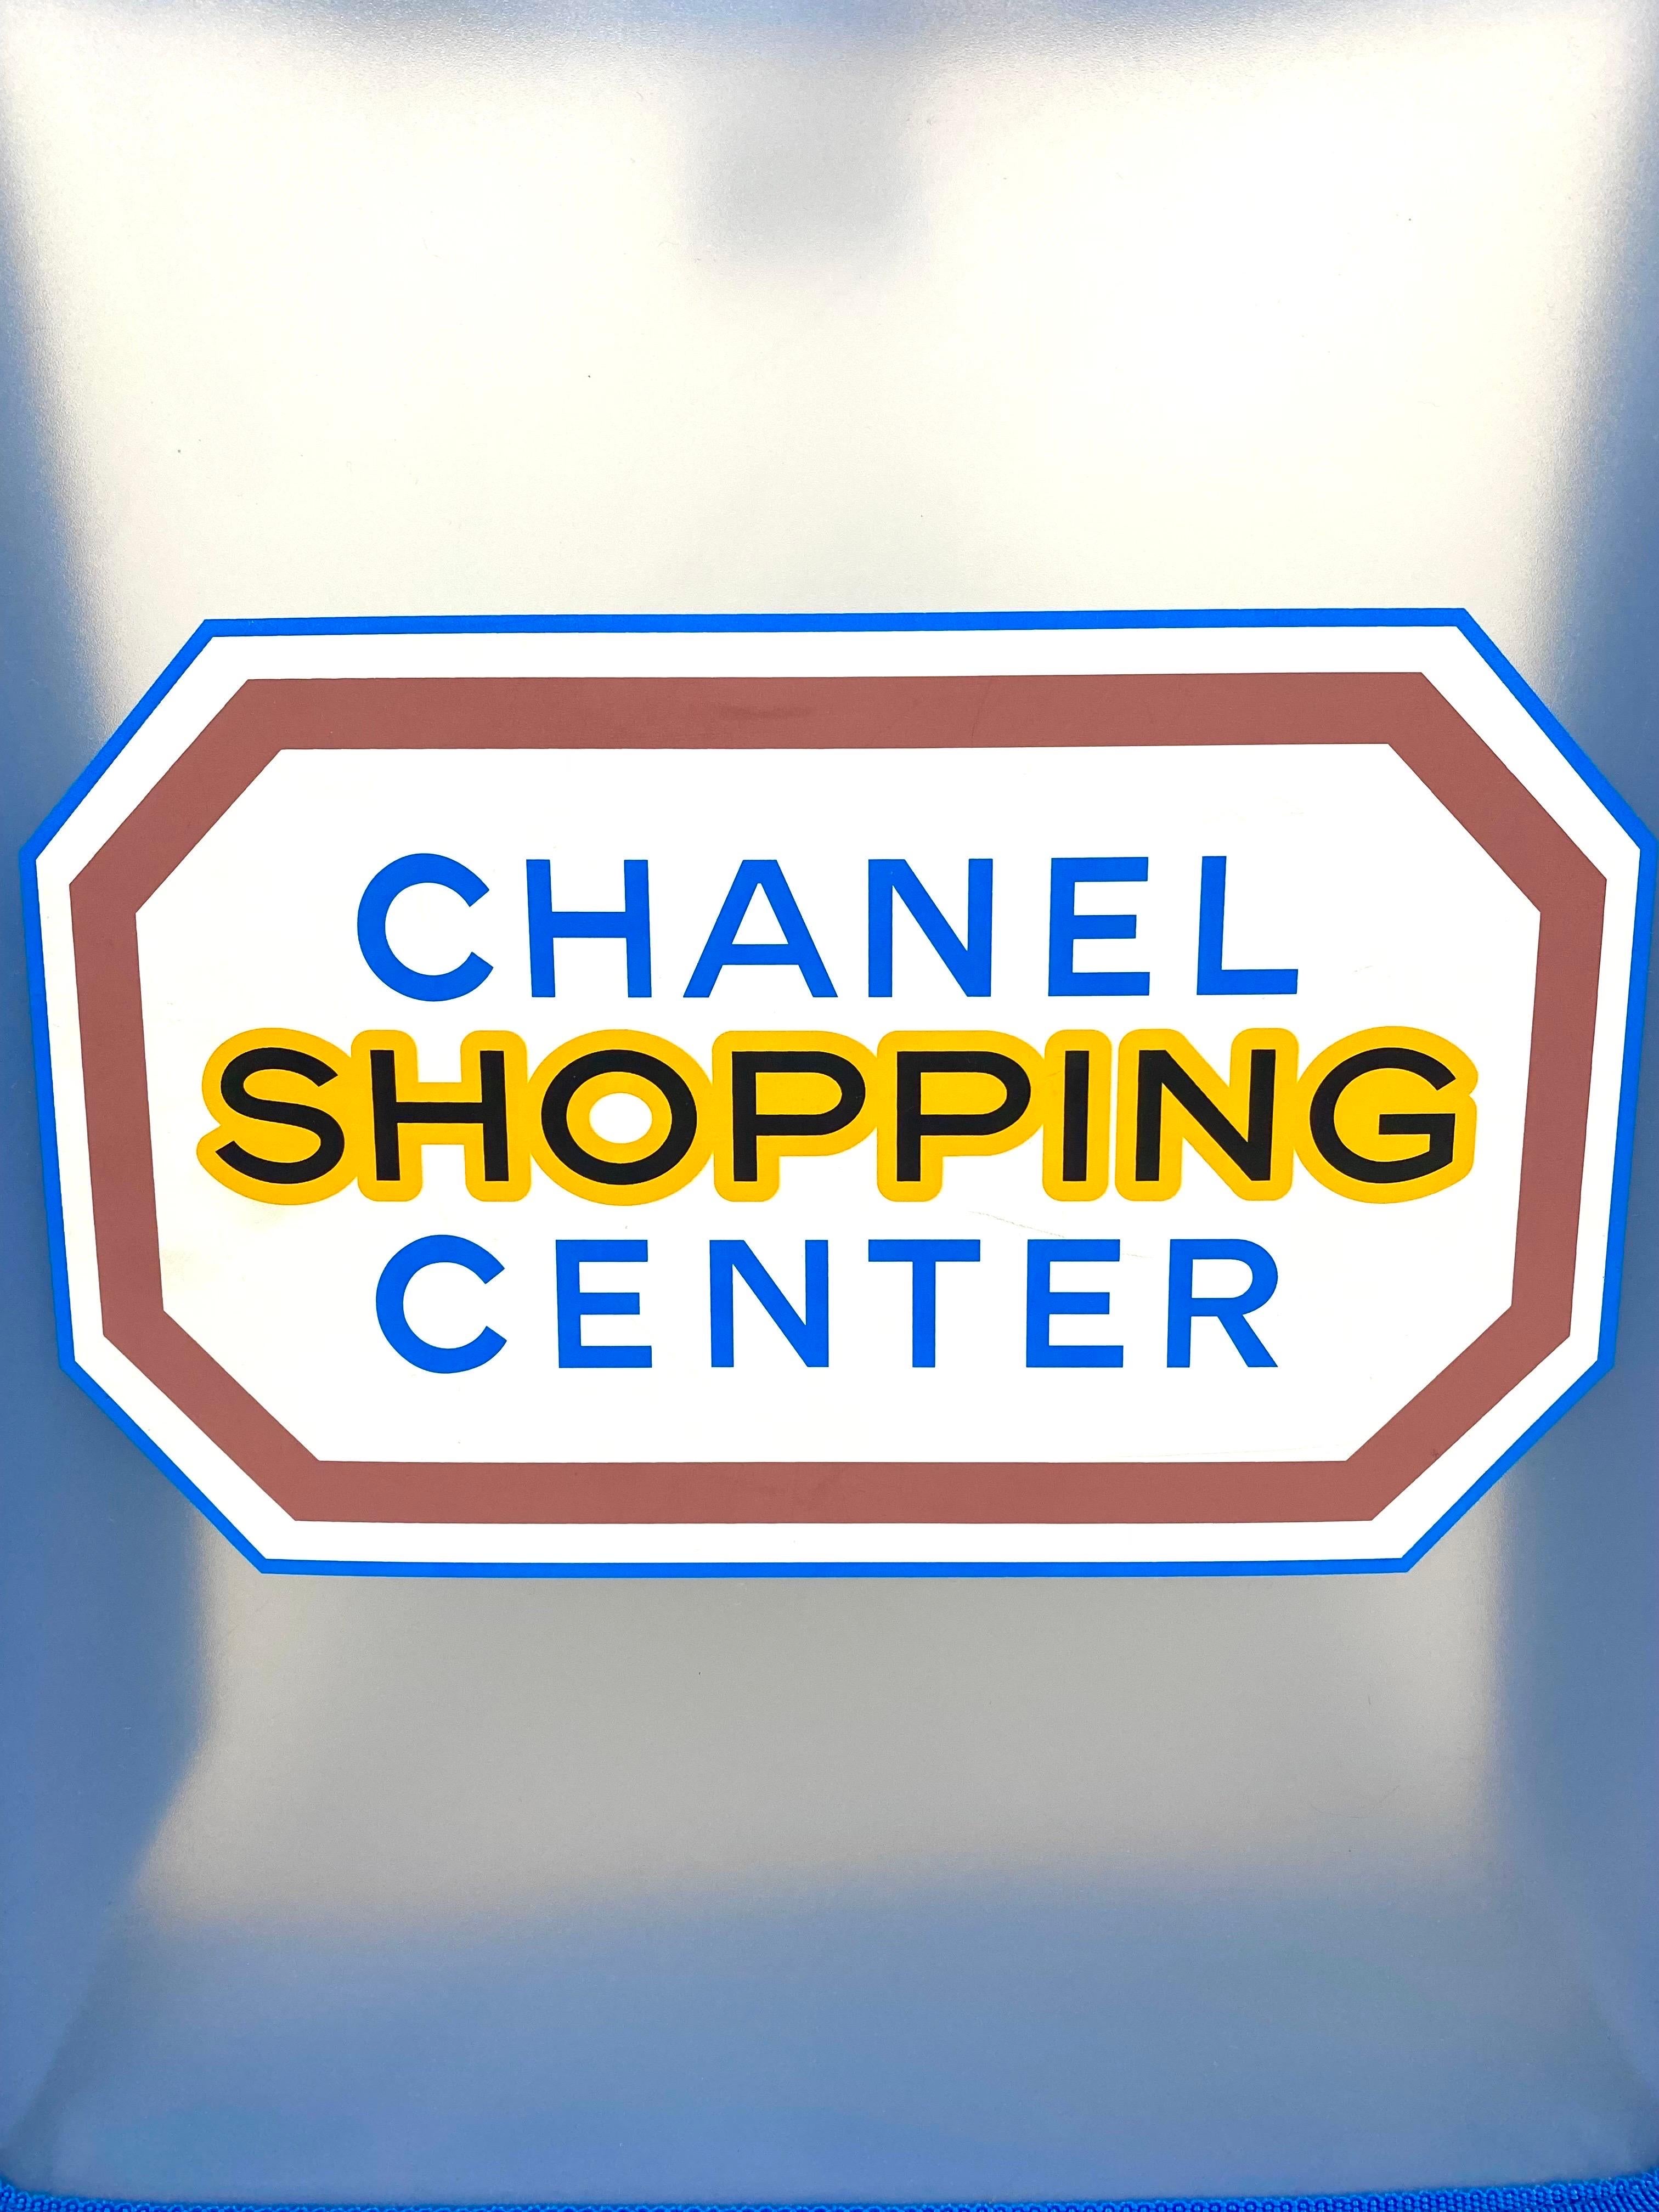 CHANEL Gekauft
Transparente Tragetasche mit Logodruck 2014
Bekannt für die Umgestaltung der Ausstellung im Grand Palais in Paris
Halle für ihre fantastischen Laufstegshows in jeder Saison,
Chanel hat dort sein eigenes Einkaufszentrum für
die